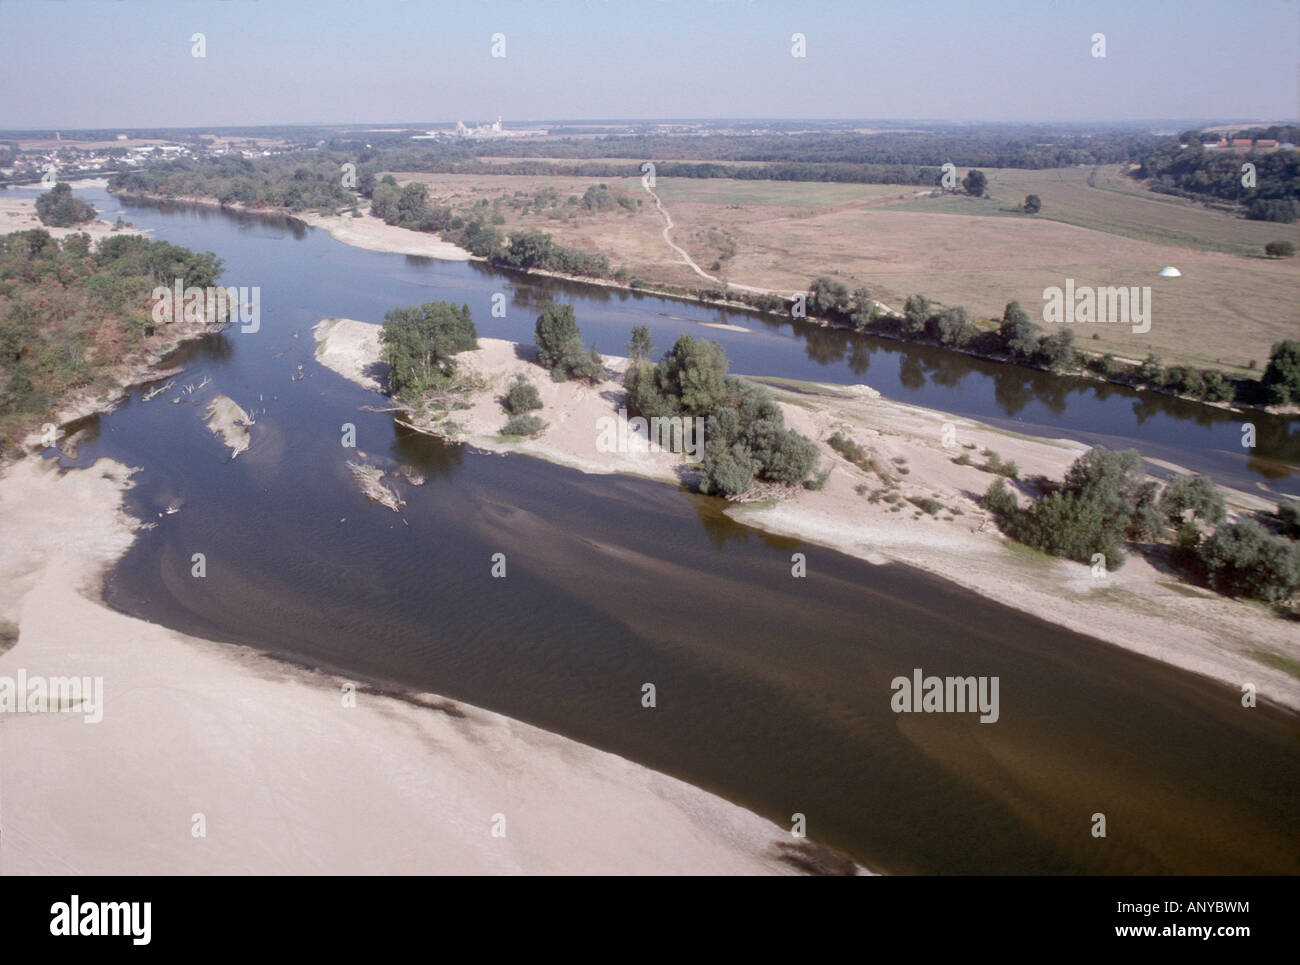 Vista aerea ,aerien,aereo,vue aerienne, la loire iles et banc de sables germiny sur Loire nievre francia Foto Stock